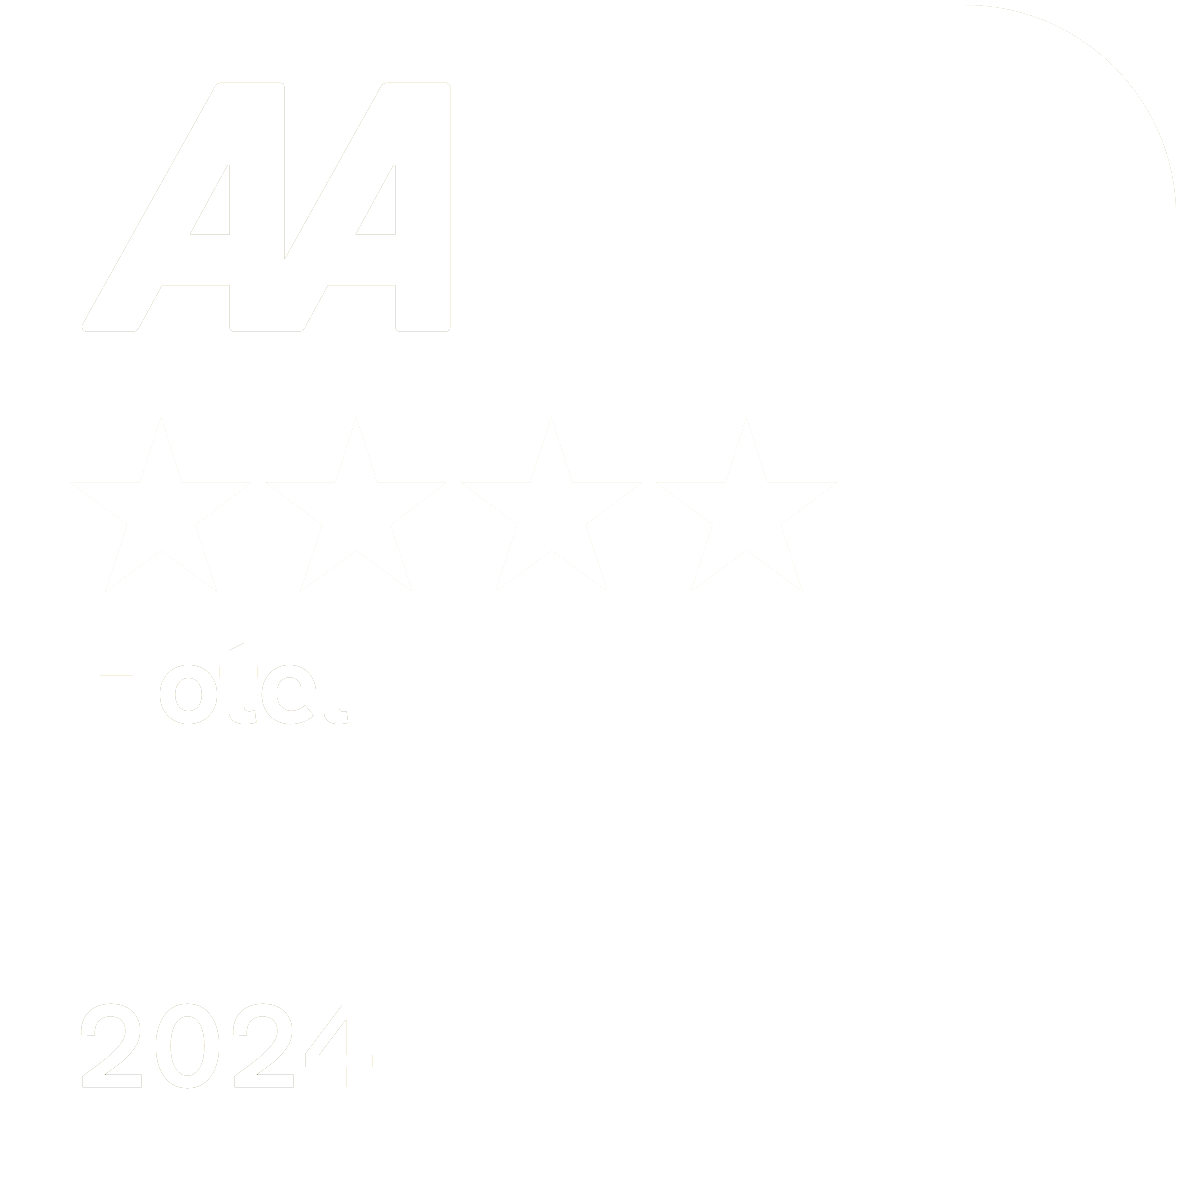 4 star hotel award